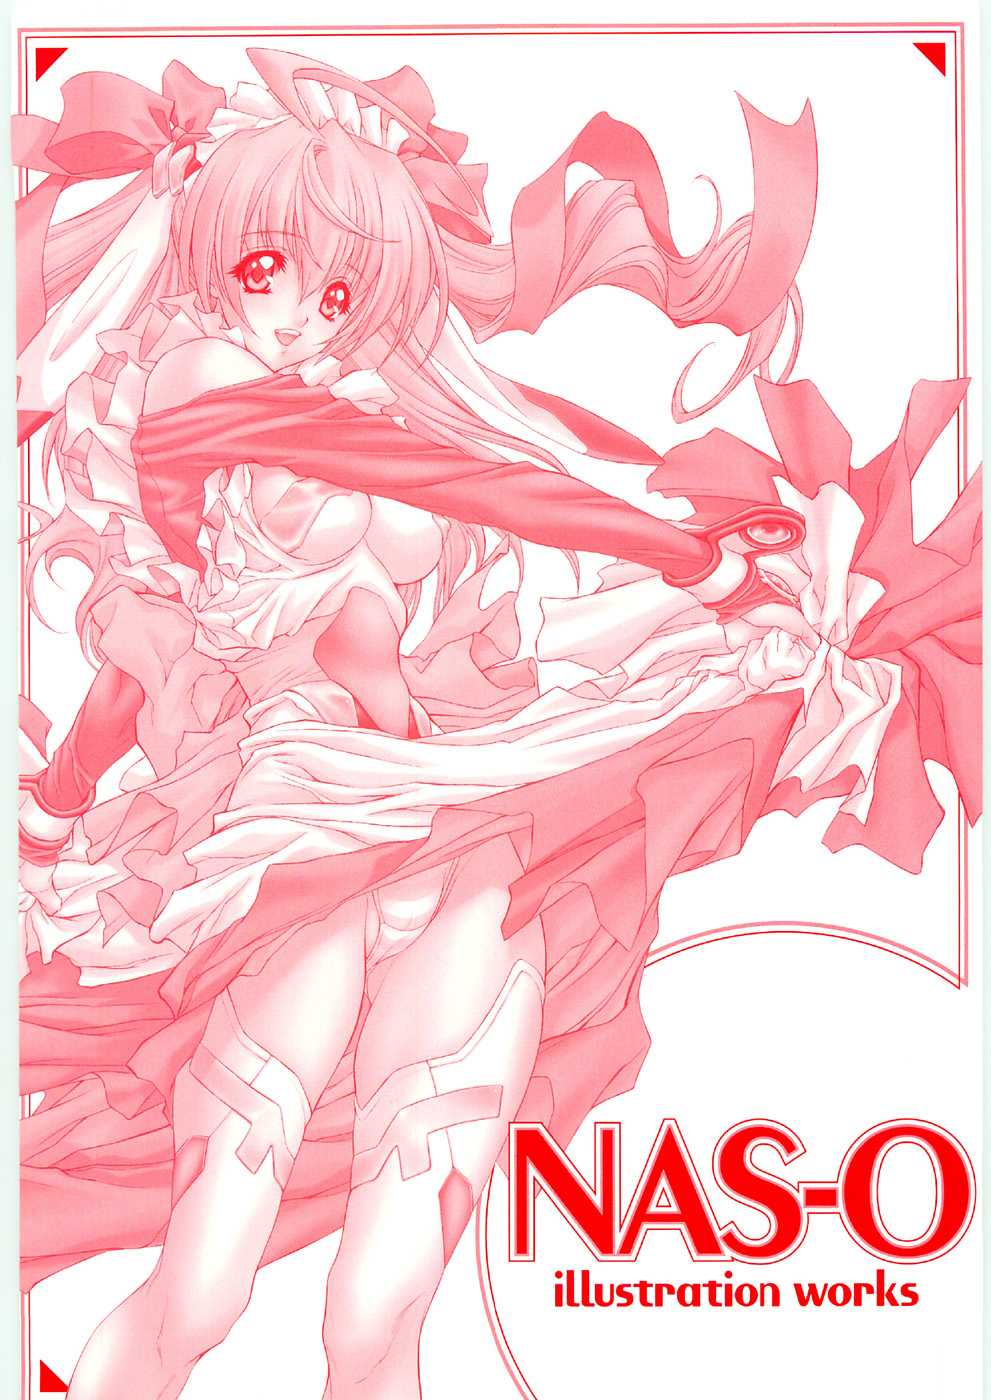 [NAS-O] illustration works 